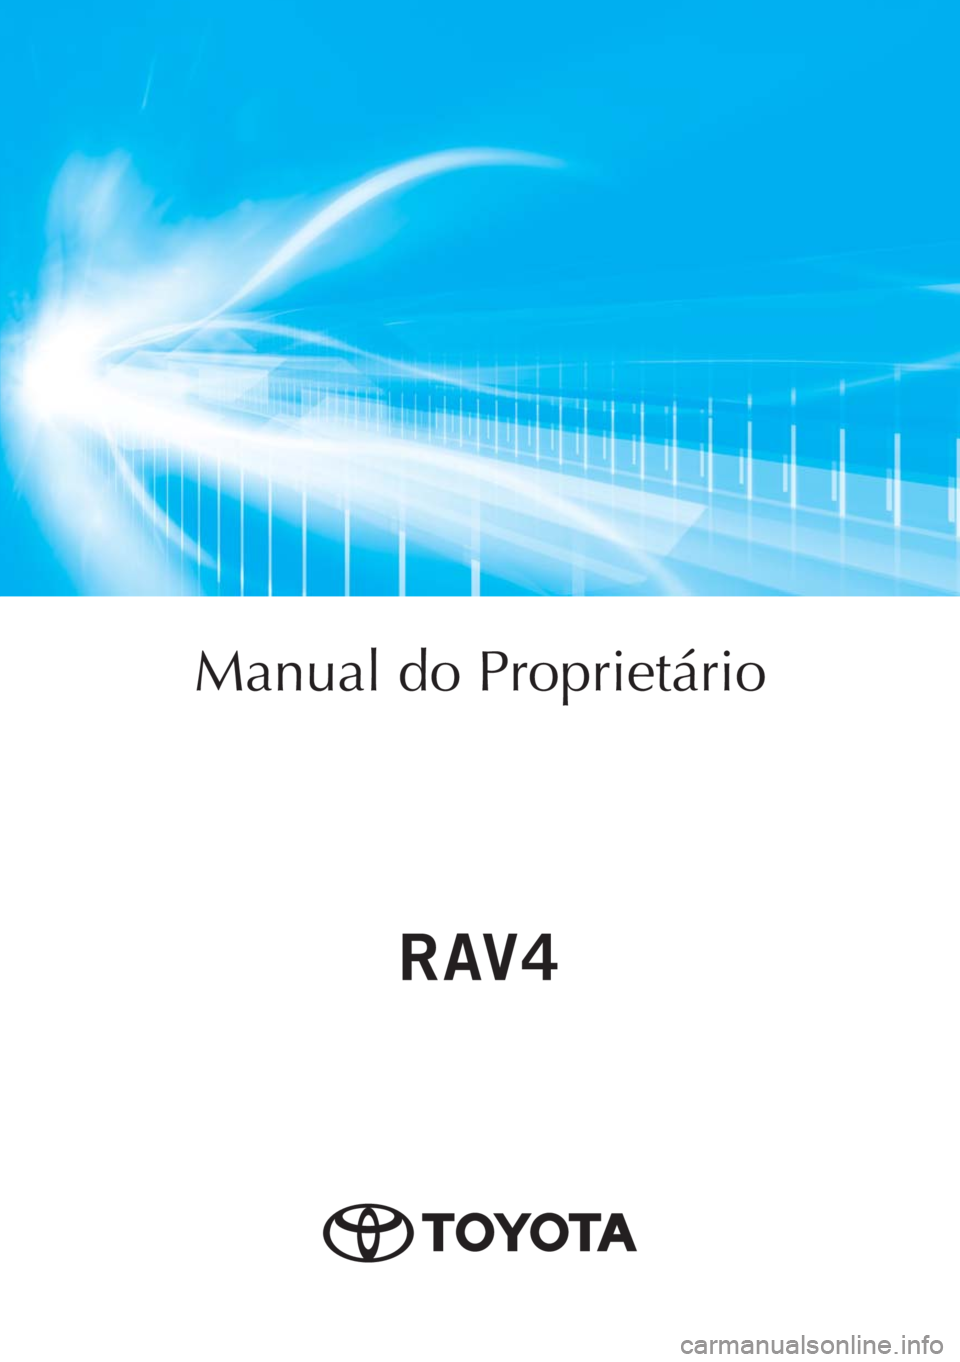 TOYOTA RAV4 2018  Manual de utilização (in Portuguese) Manual do Proprietário
Mod. OM42B46PT
Public. N.º OM42B46E
ORGAL-PORTO 